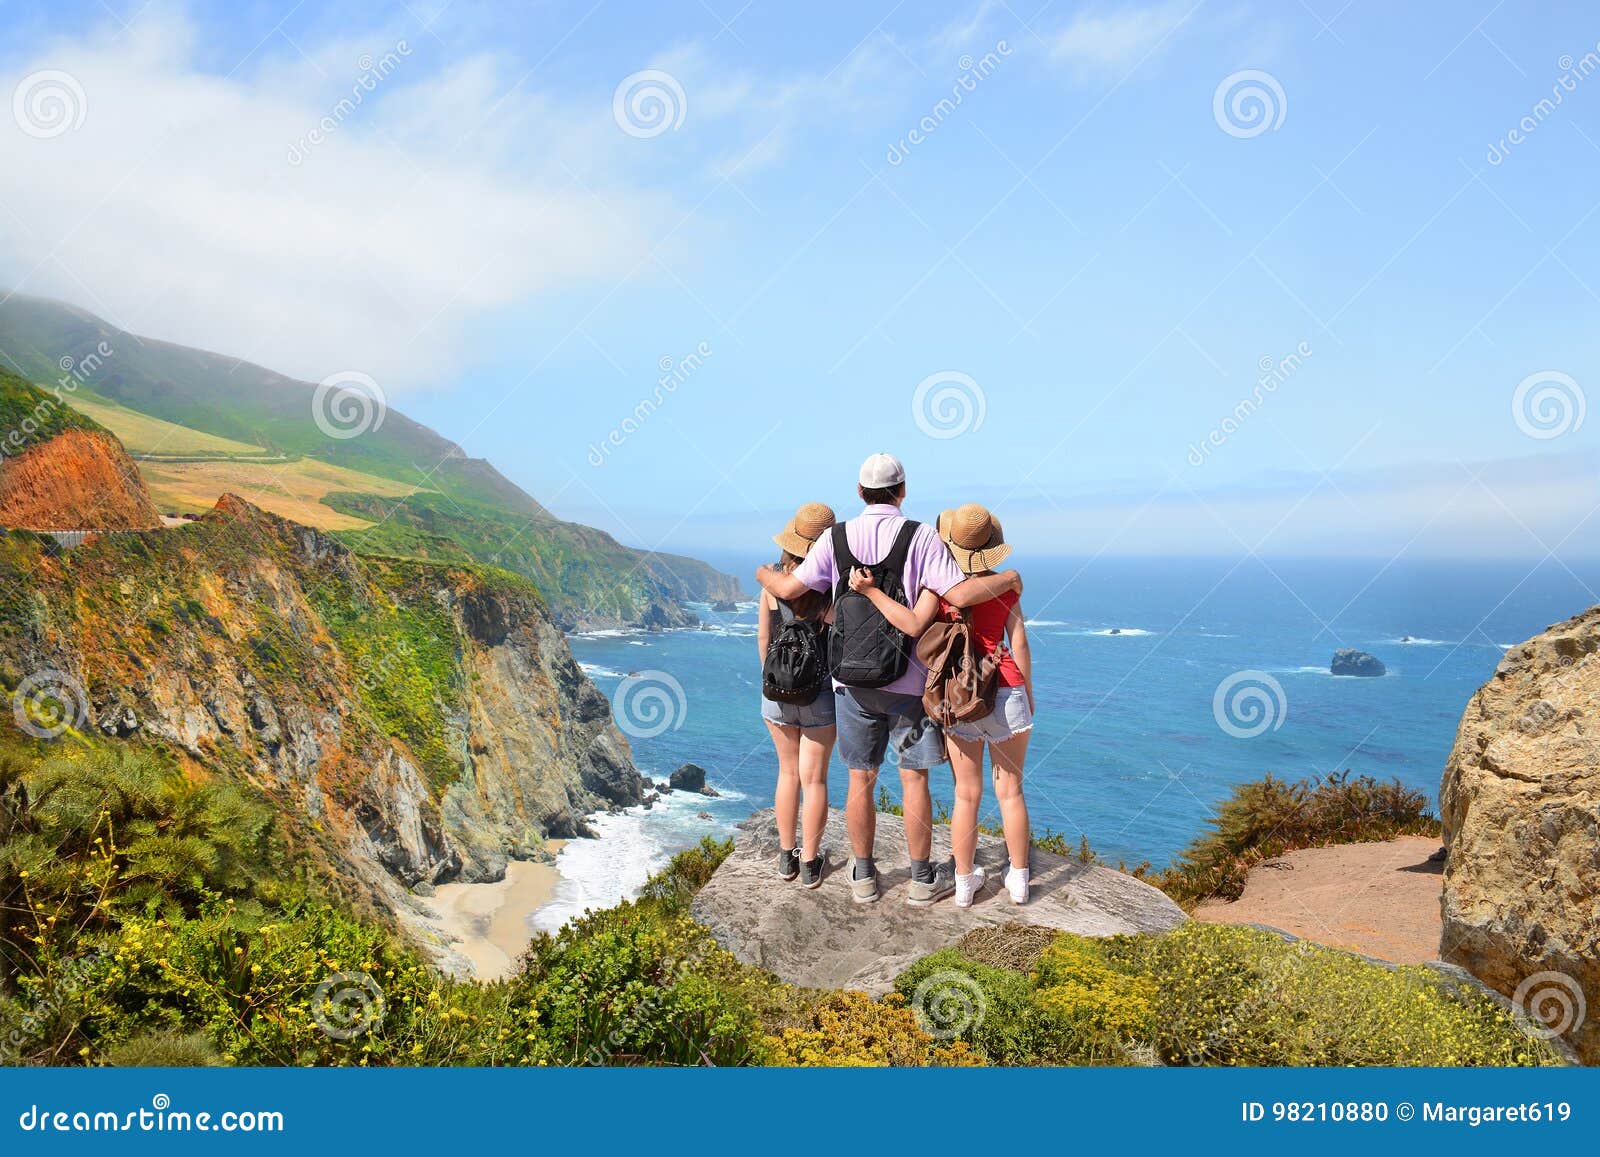 Family on Hiking Trip Enjoying Beautiful Summer Mountains, Coastal  Landscape, Stock Photo - Image of camping, exploration: 98210880